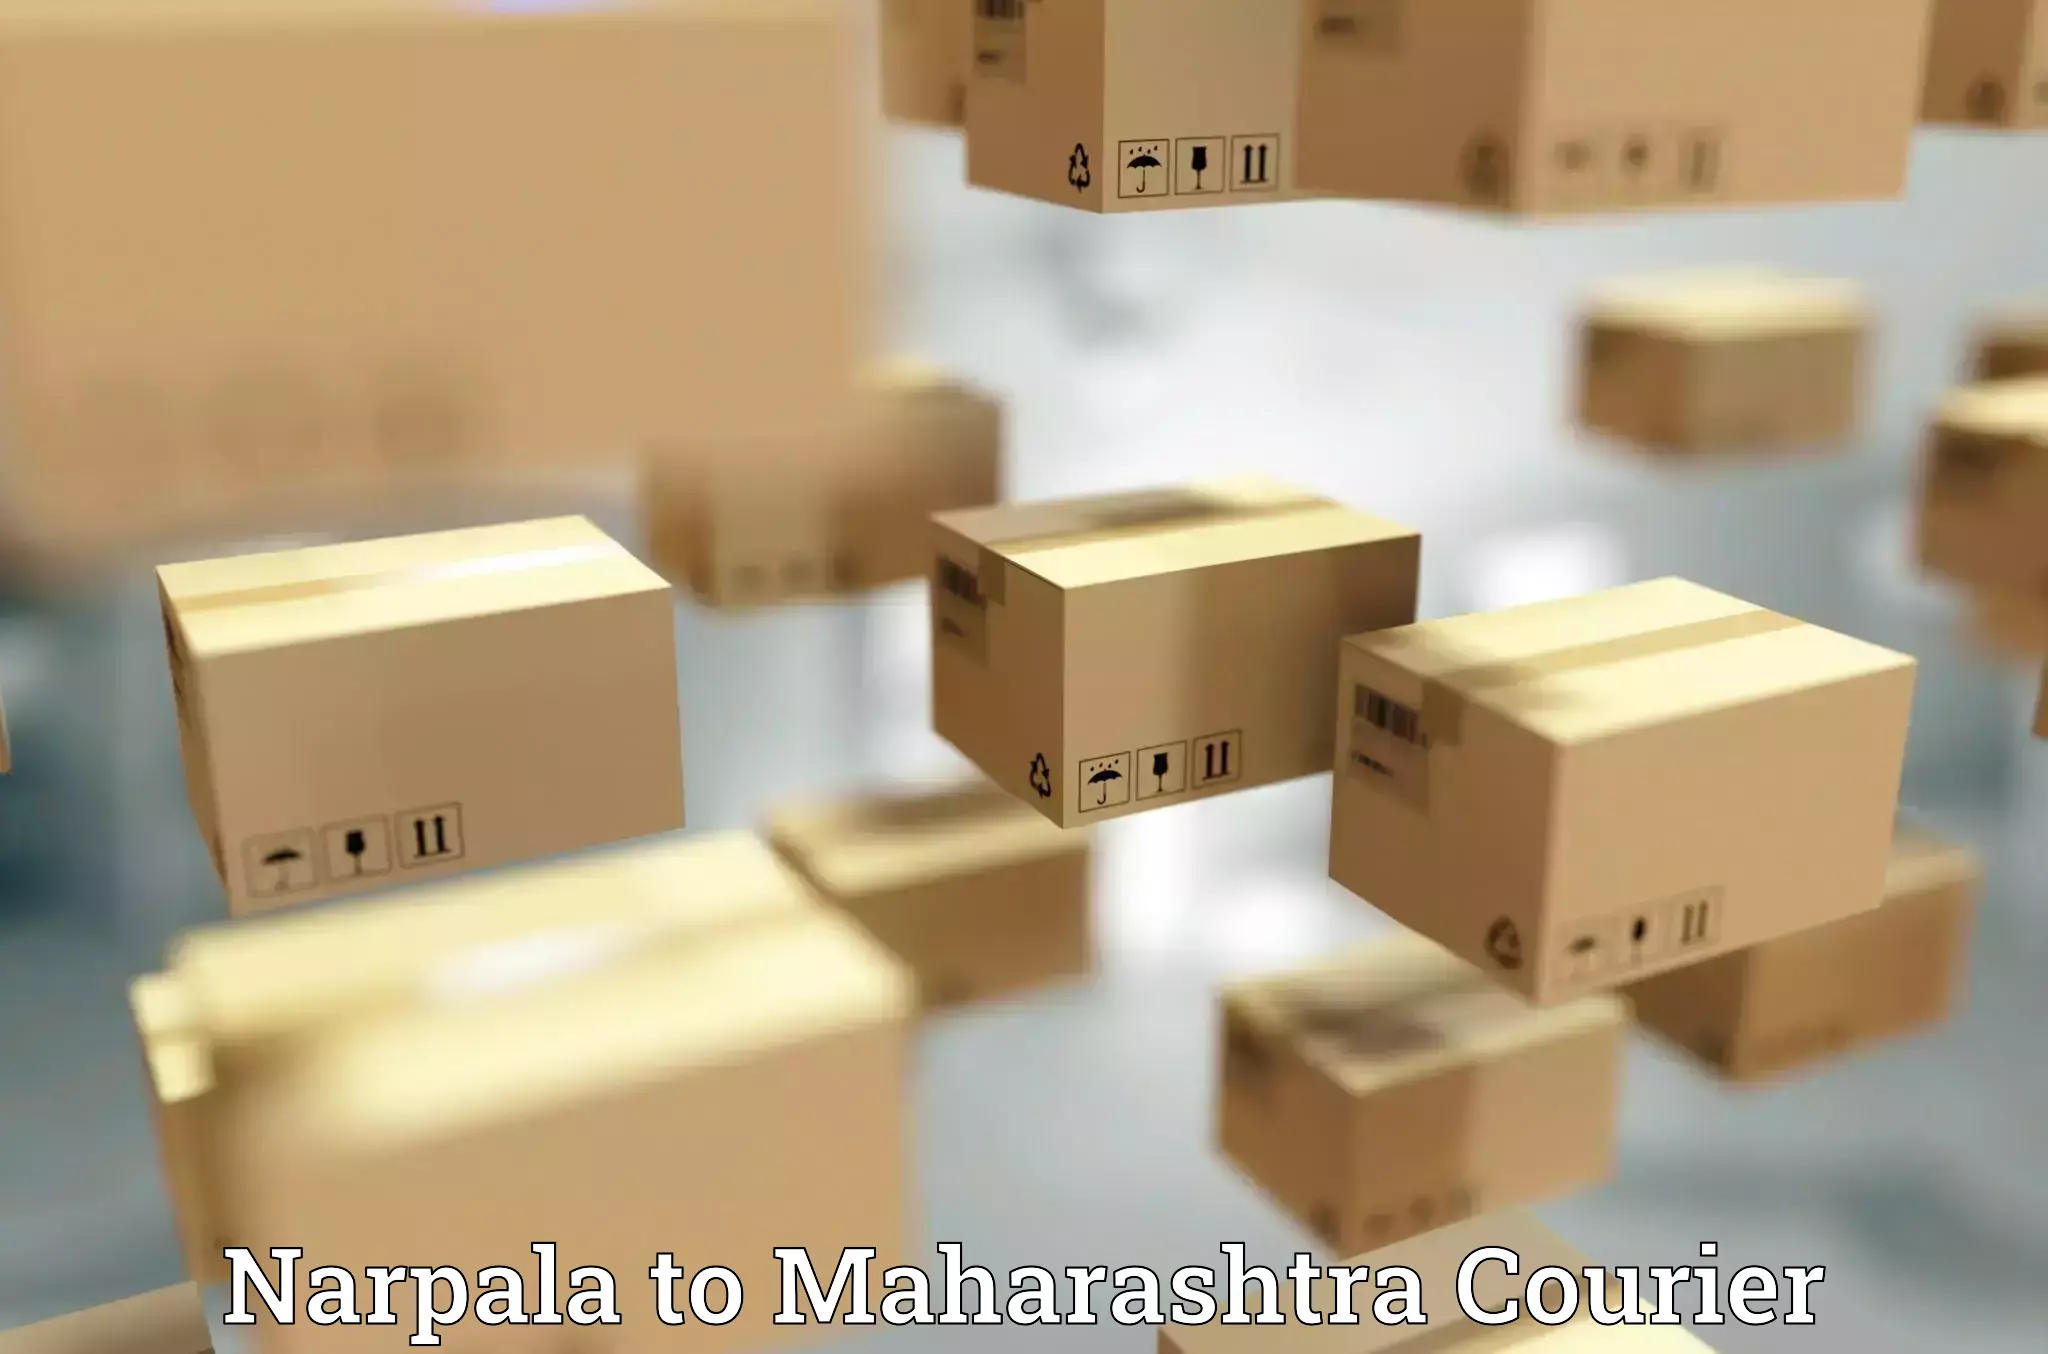 Urgent courier needs Narpala to Malvan